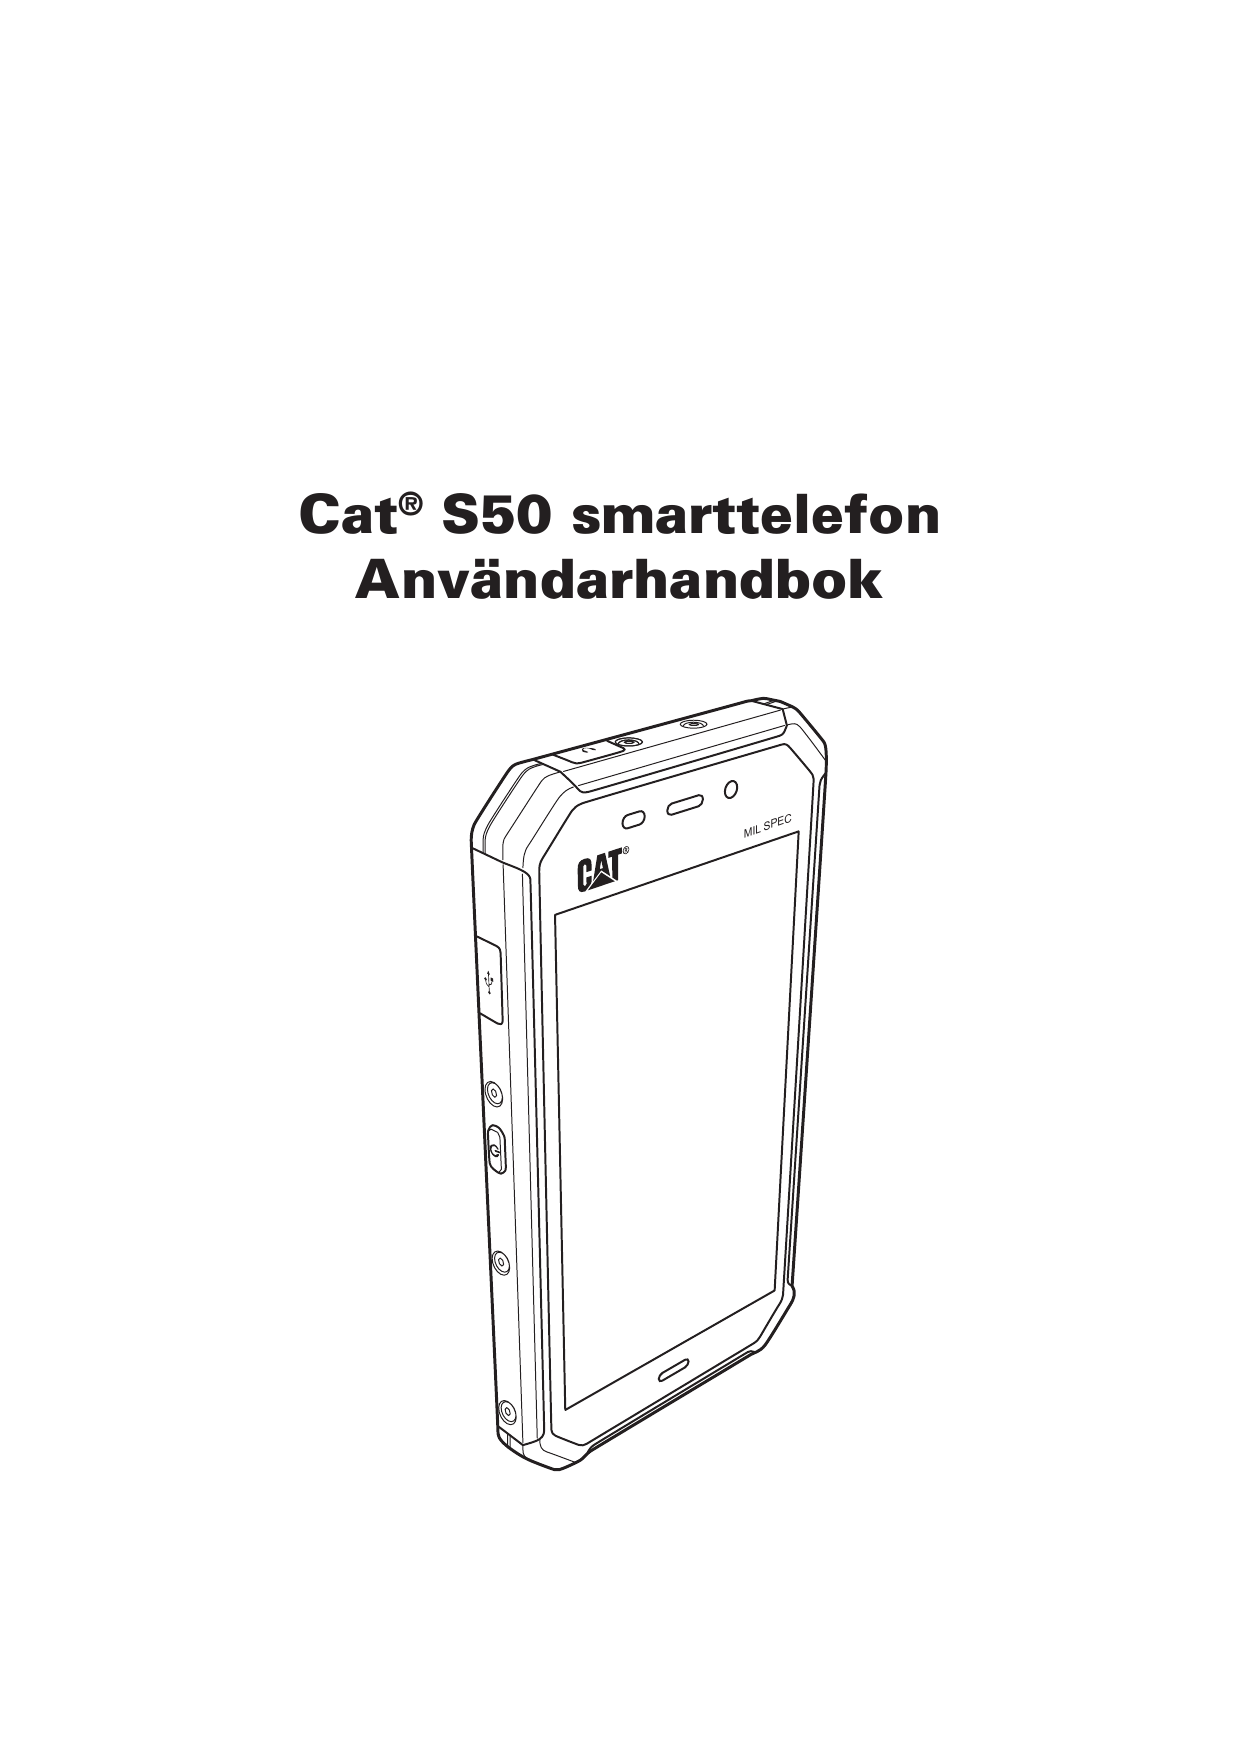 Cat® S50 smarttelefonAnvändarhandbokMILCSPE